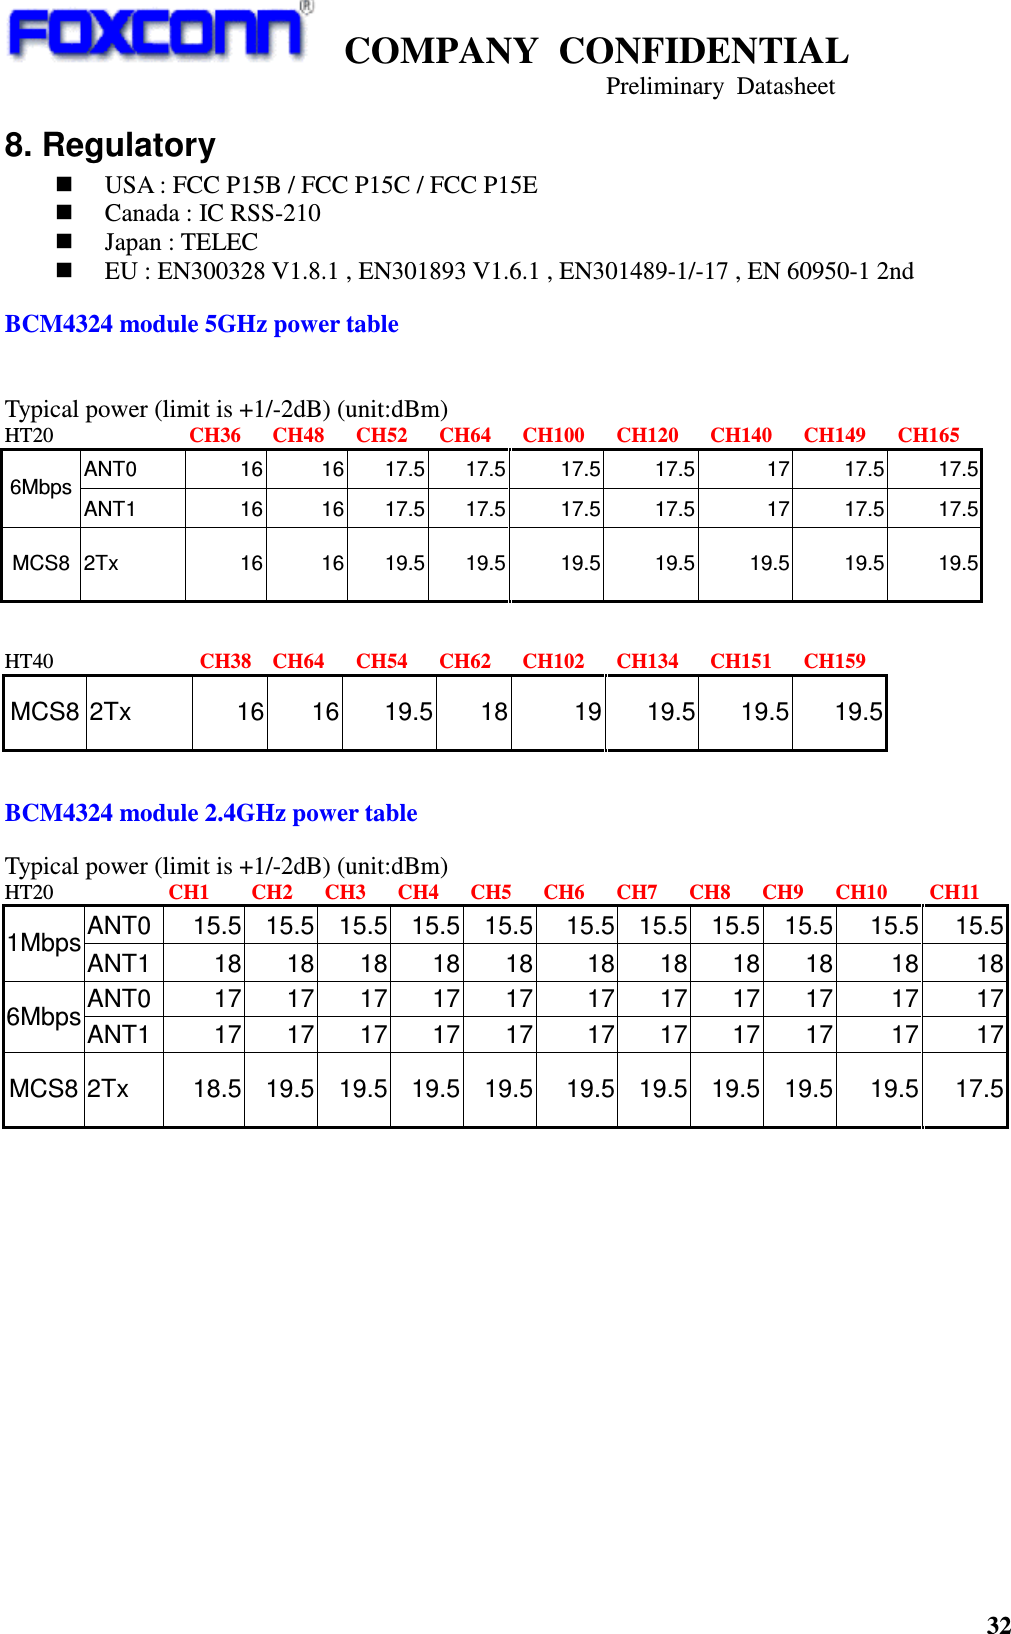    COMPANY  CONFIDENTIAL                                                                     Preliminary  Datasheet 32  8. Regulatory  USA : FCC P15B / FCC P15C / FCC P15E  Canada : IC RSS-210  Japan : TELEC  EU : EN300328 V1.8.1 , EN301893 V1.6.1 , EN301489-1/-17 , EN 60950-1 2nd   BCM4324 module 5GHz power table   Typical power (limit is +1/-2dB) (unit:dBm) HT20                          CH36      CH48      CH52      CH64      CH100      CH120      CH140      CH149      CH165 ANT0  16 16 17.5 17.5 17.5 17.5 17 17.5 17.5 6Mbps ANT1  16 16 17.5 17.5 17.5 17.5 17 17.5 17.5 MCS8 2Tx  16 16 19.5 19.5 19.5 19.5 19.5 19.5 19.5   HT40                         CH38    CH64      CH54      CH62      CH102      CH134      CH151      CH159 MCS8 2Tx  16 16 19.5 18 19 19.5 19.5 19.5   BCM4324 module 2.4GHz power table  Typical power (limit is +1/-2dB) (unit:dBm) HT20                      CH1        CH2      CH3      CH4      CH5      CH6      CH7      CH8      CH9      CH10        CH11 ANT0 15.5 15.5 15.5 15.5 15.5 15.5 15.5 15.5 15.5 15.5 15.5 1Mbps ANT1 18 18 18 18 18 18 18 18 18 18 18 ANT0 17 17 17 17 17 17 17 17 17 17 17 6Mbps ANT1 17 17 17 17 17 17 17 17 17 17 17 MCS8 2Tx  18.5 19.5 19.5 19.5 19.5 19.5 19.5 19.5 19.5 19.5 17.5  